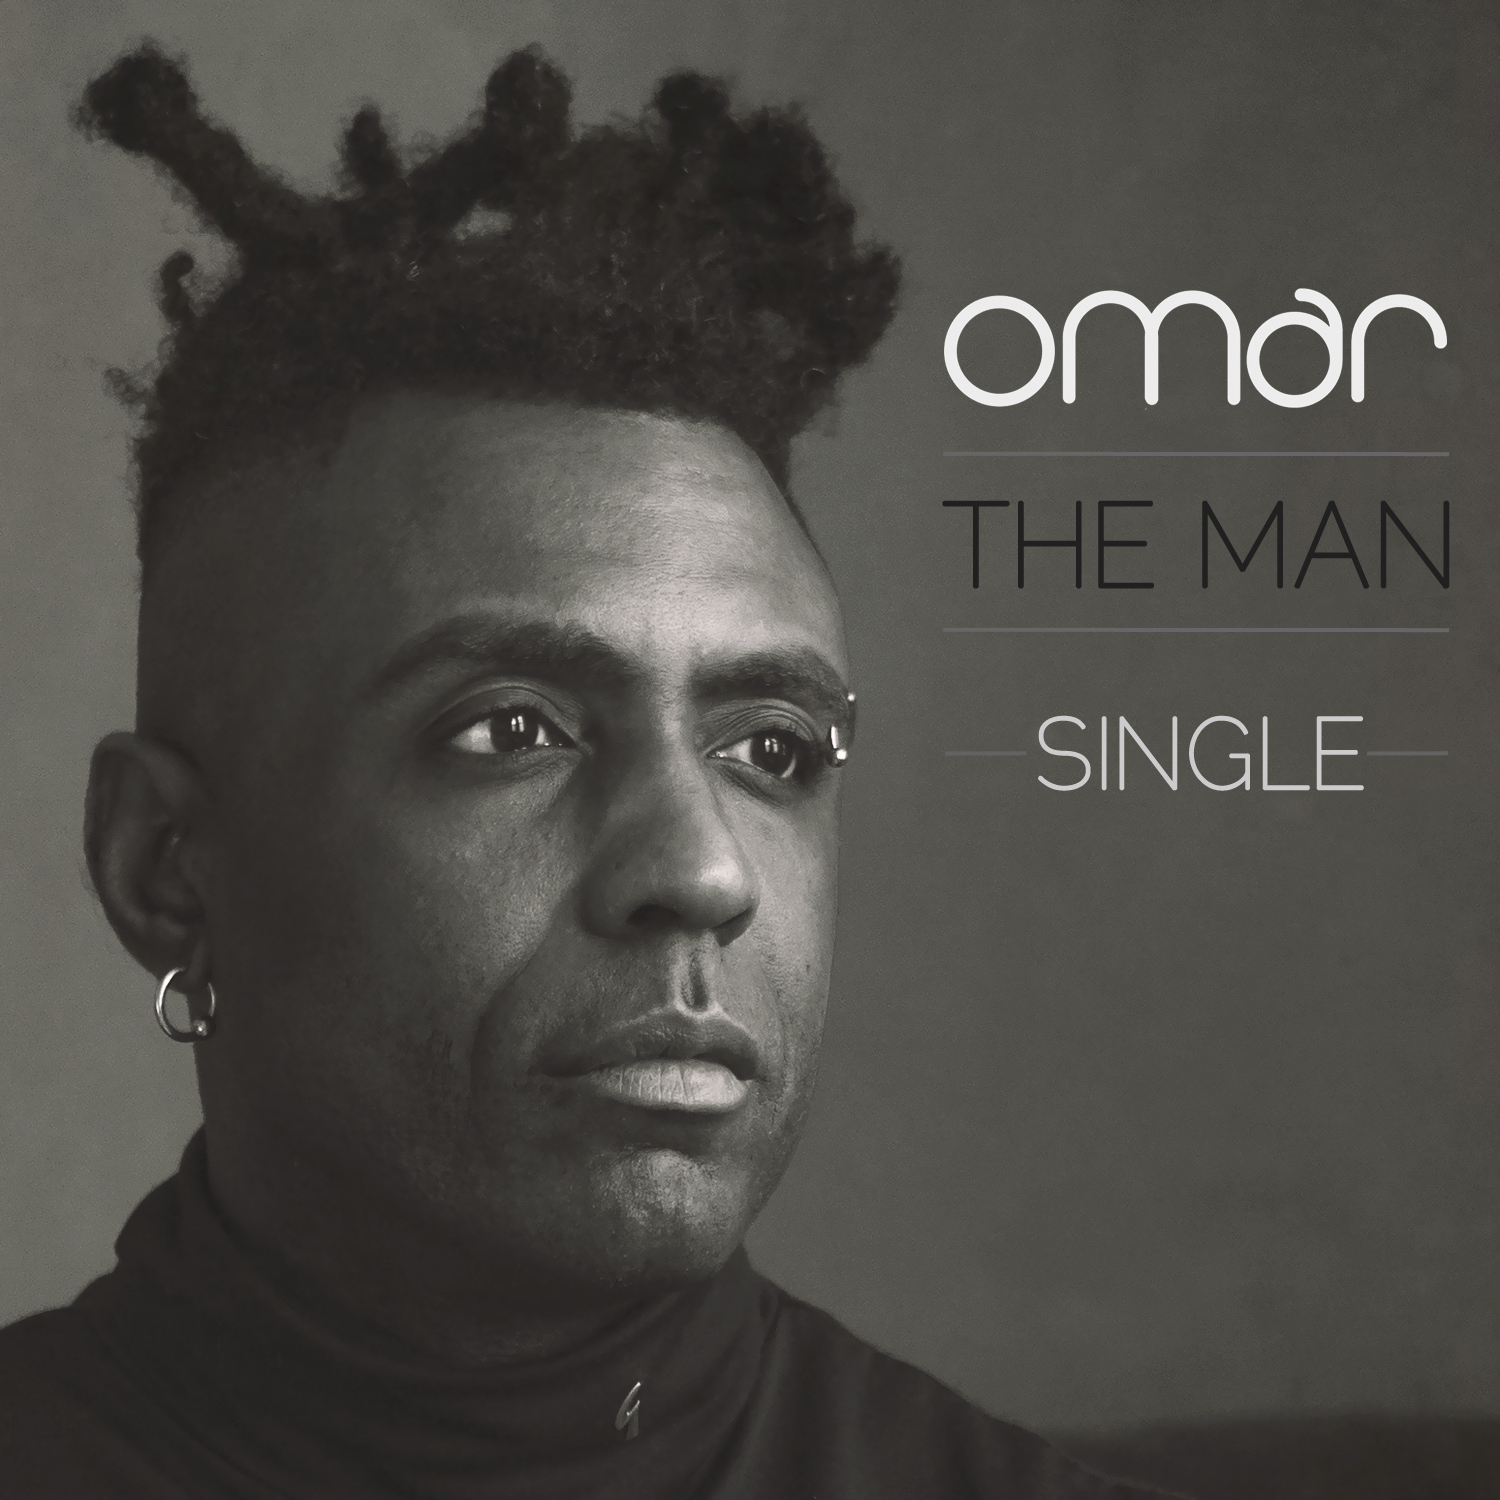 Omar <em>The Man</em> Maxi Single